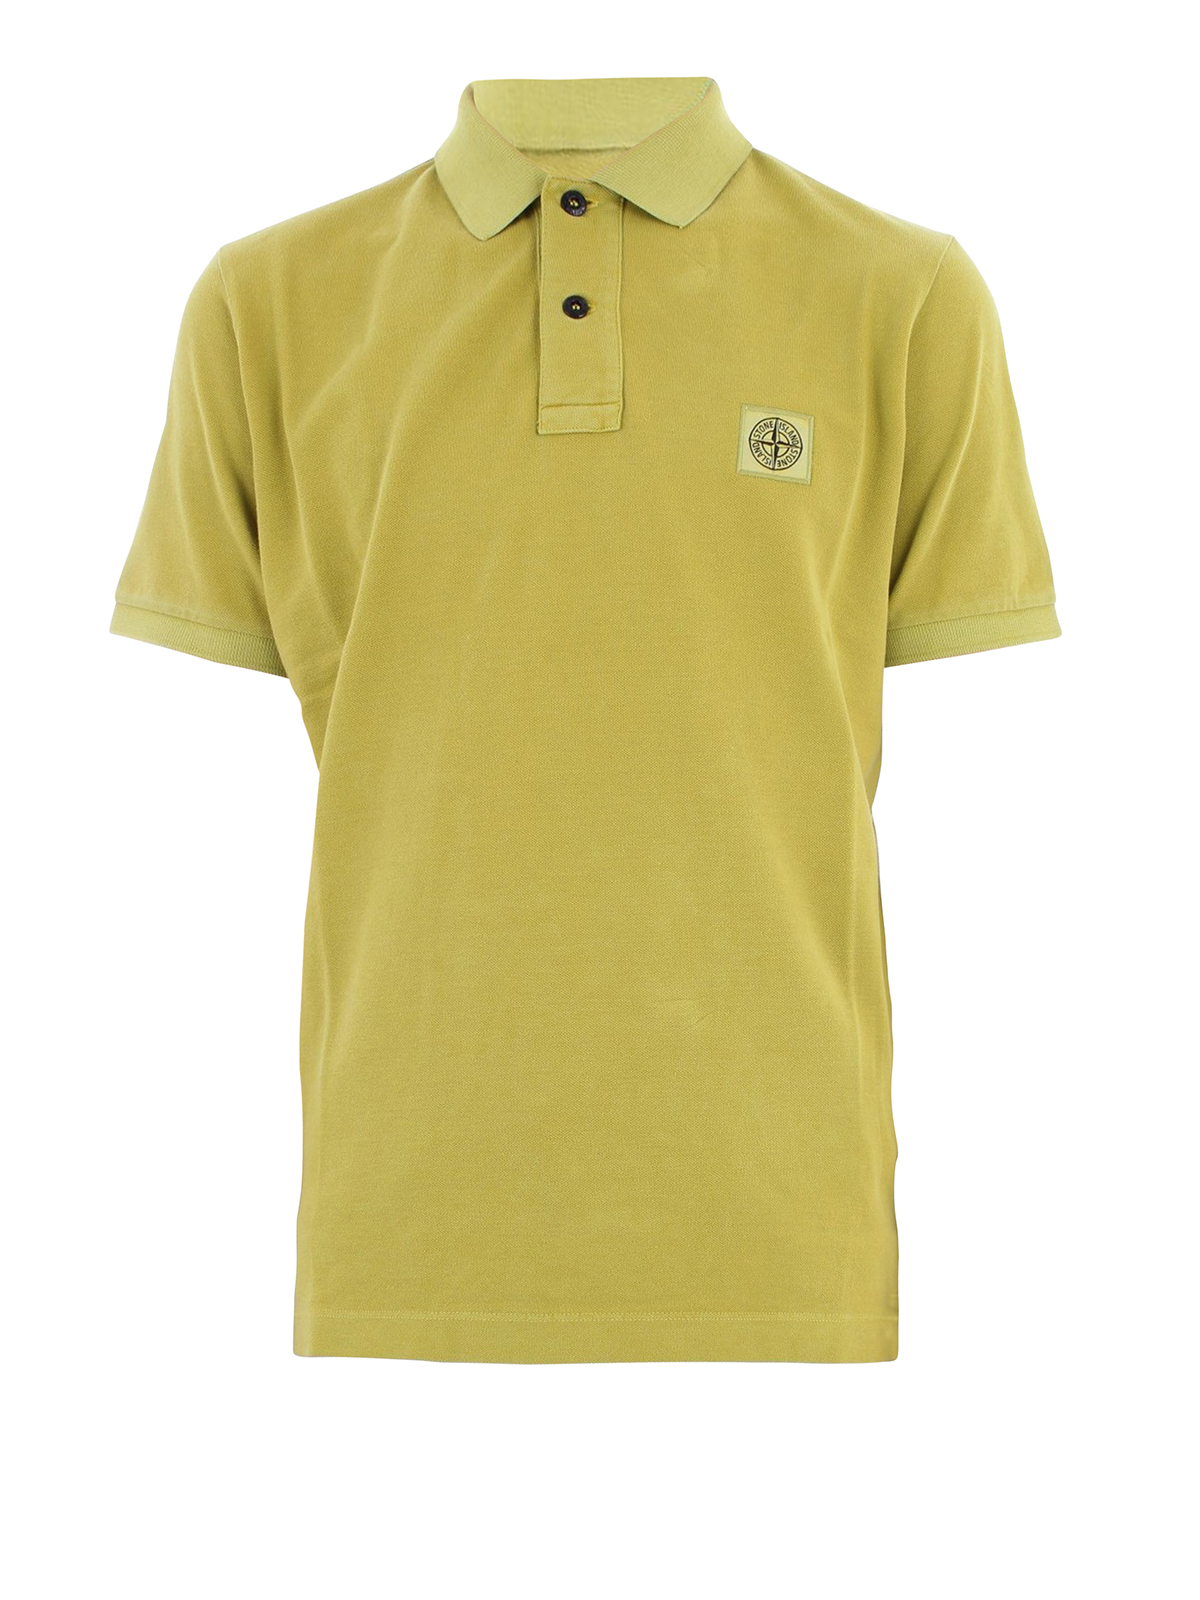 Stone Island Slim Cotton Pique Bright Yellow Polo Shirt Mens S/M/L/XL NWT $140